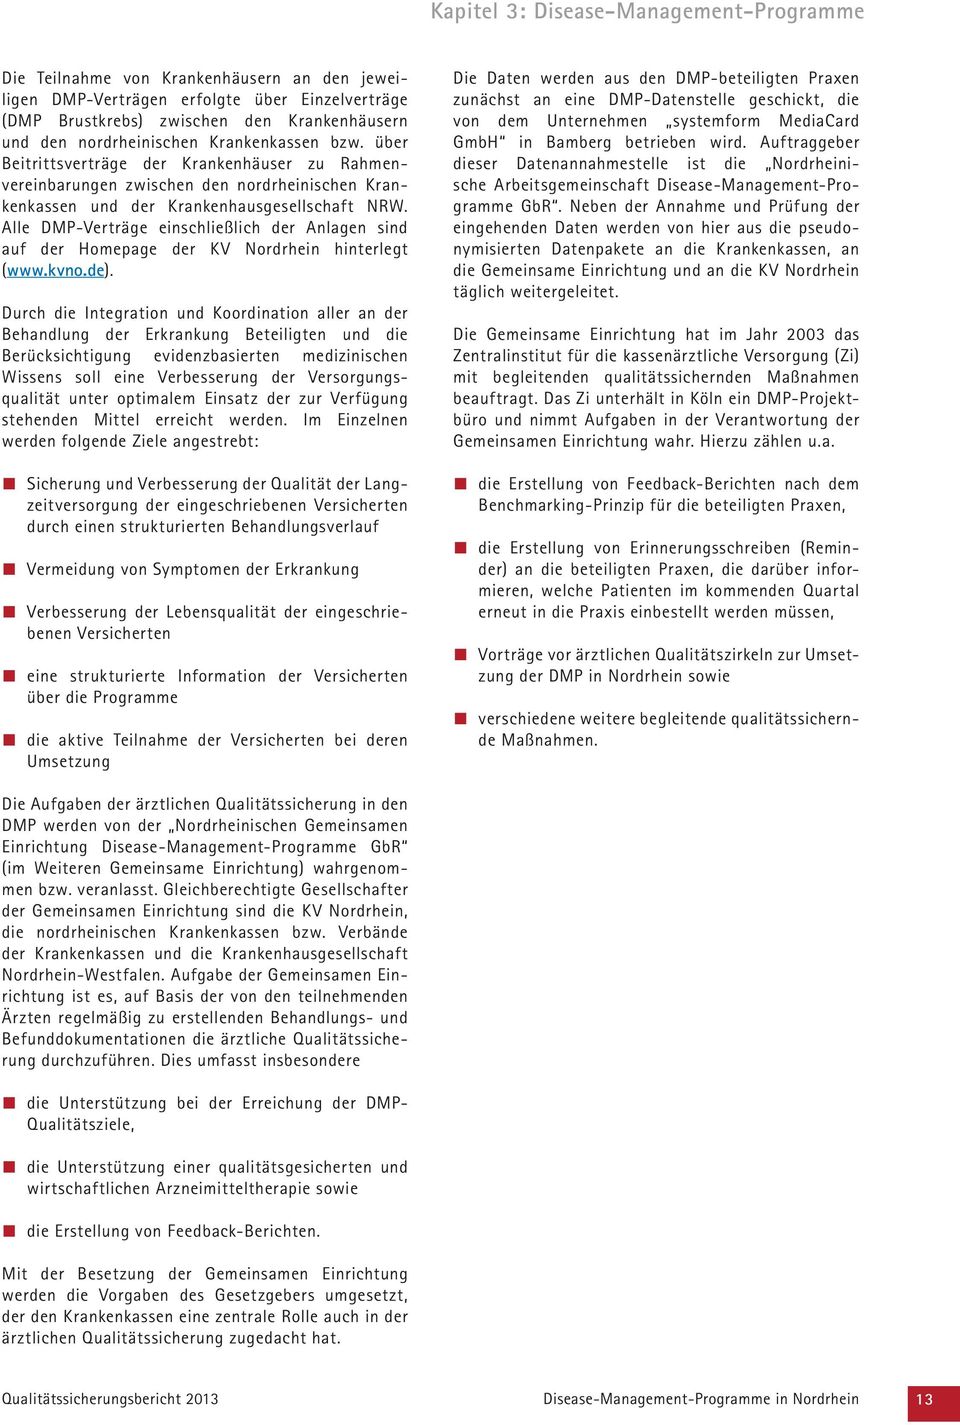 Alle DMP-Verträge einschließlich der Anlagen sind auf der Homepage der KV Nordrhein hinterlegt (www.kvno.de).